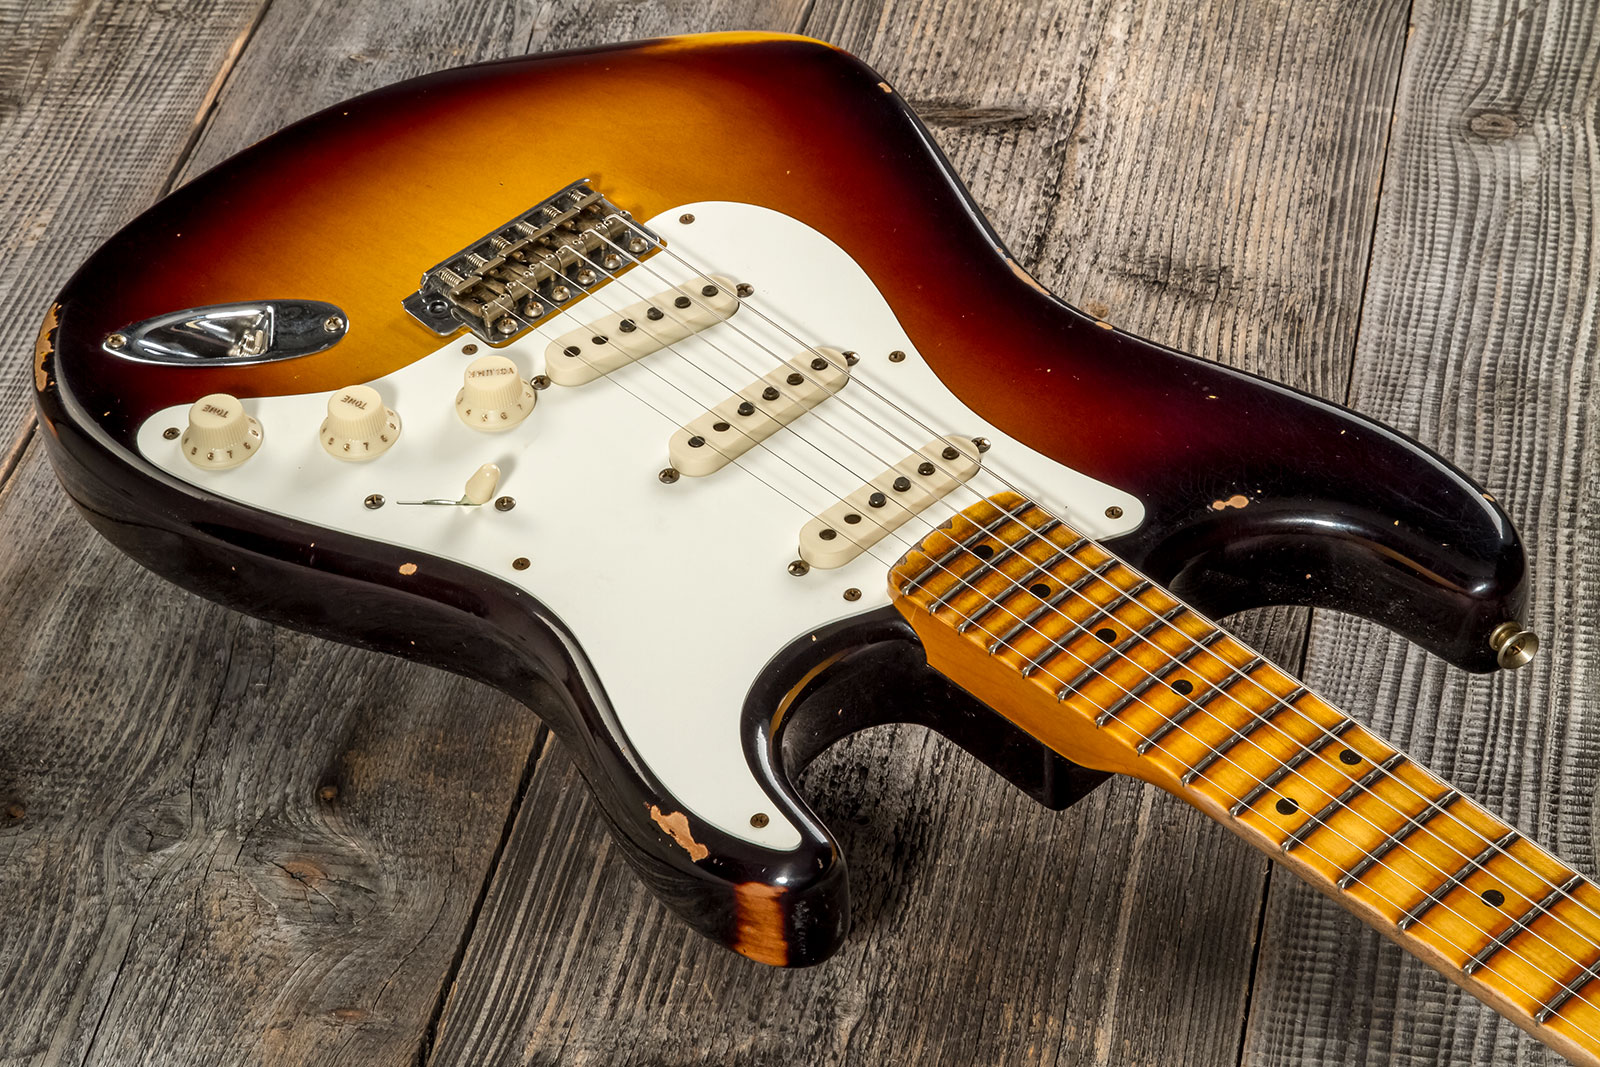 Fender Custom Shop Strat 1957 3s Trem Mn #cz575421 - Relic 2-color Sunburst - Str shape electric guitar - Variation 2